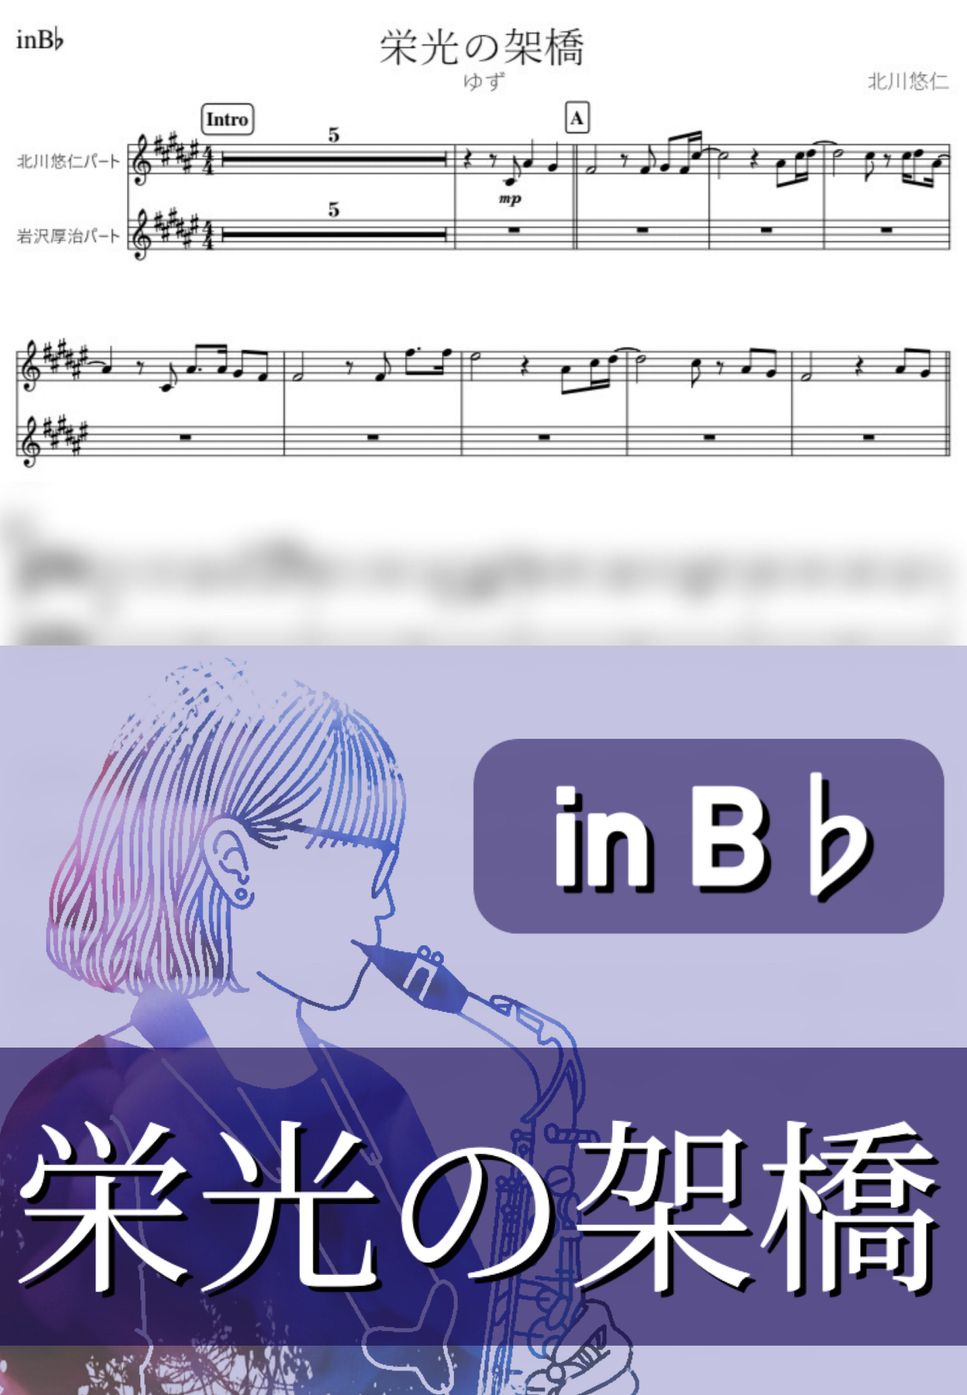 ゆず - 栄光の架橋 (B♭) by kanamusic